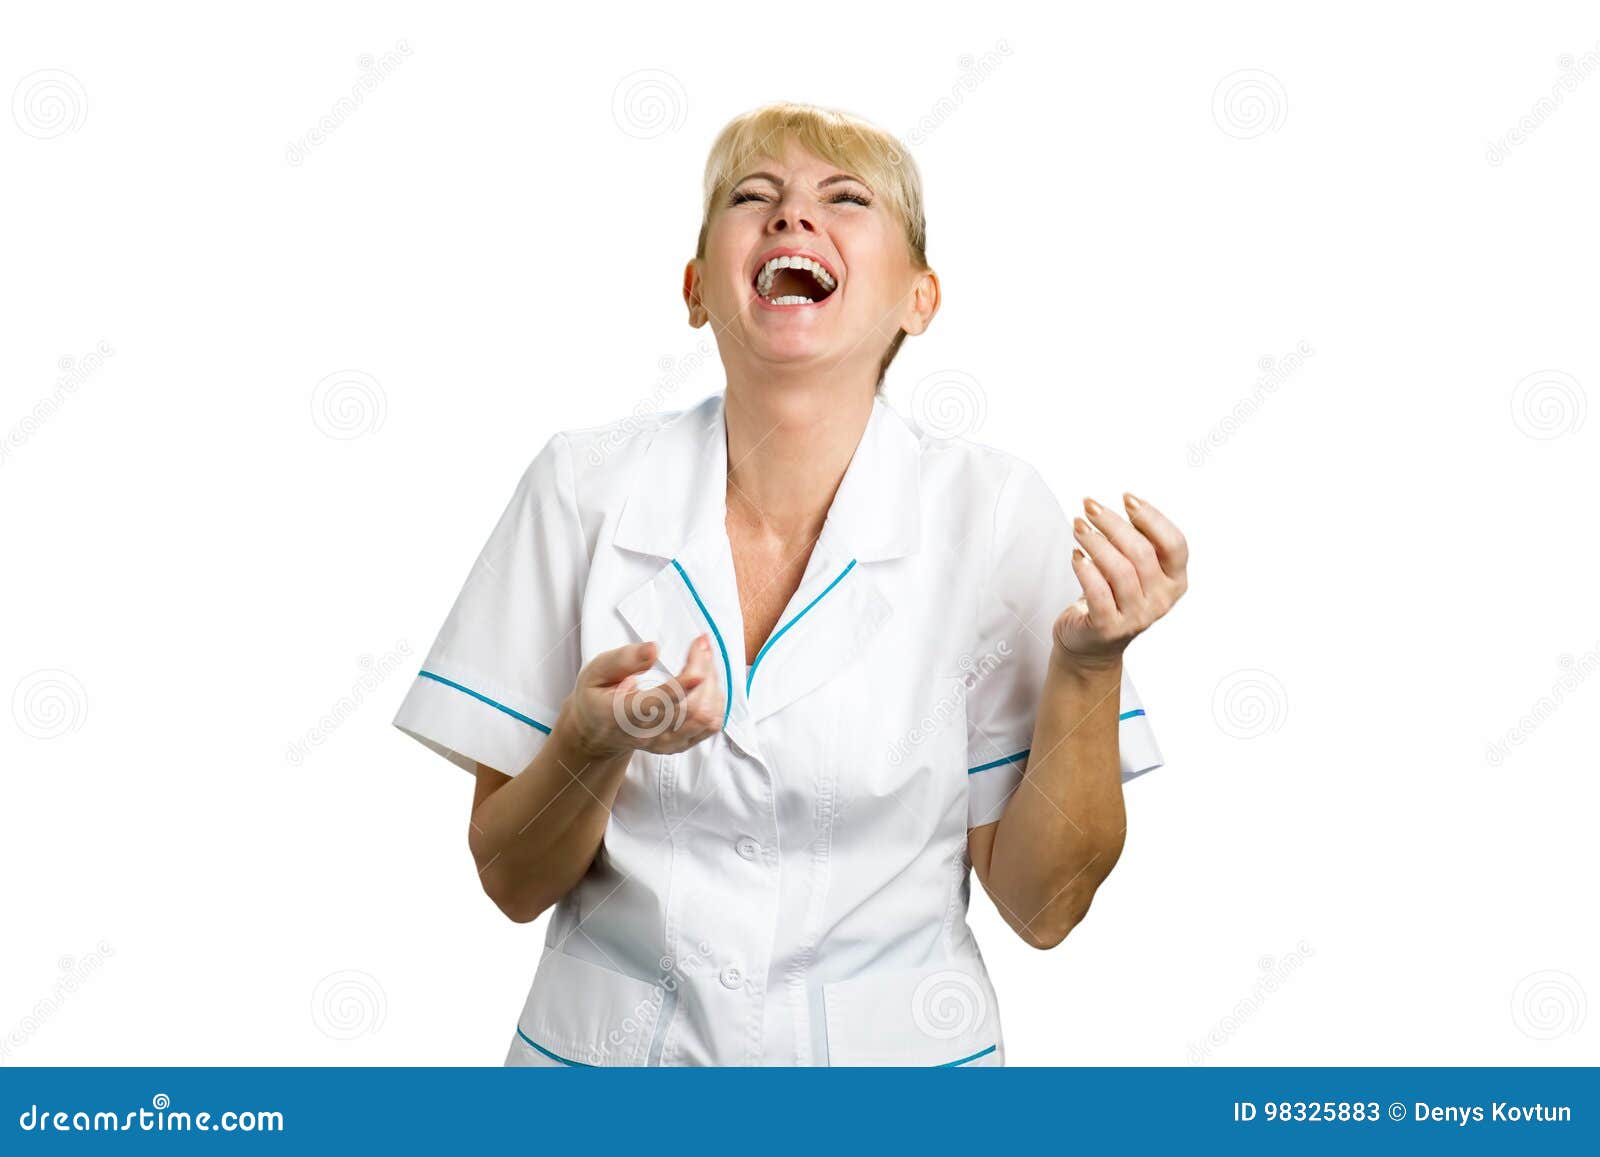 Laughing Nurse